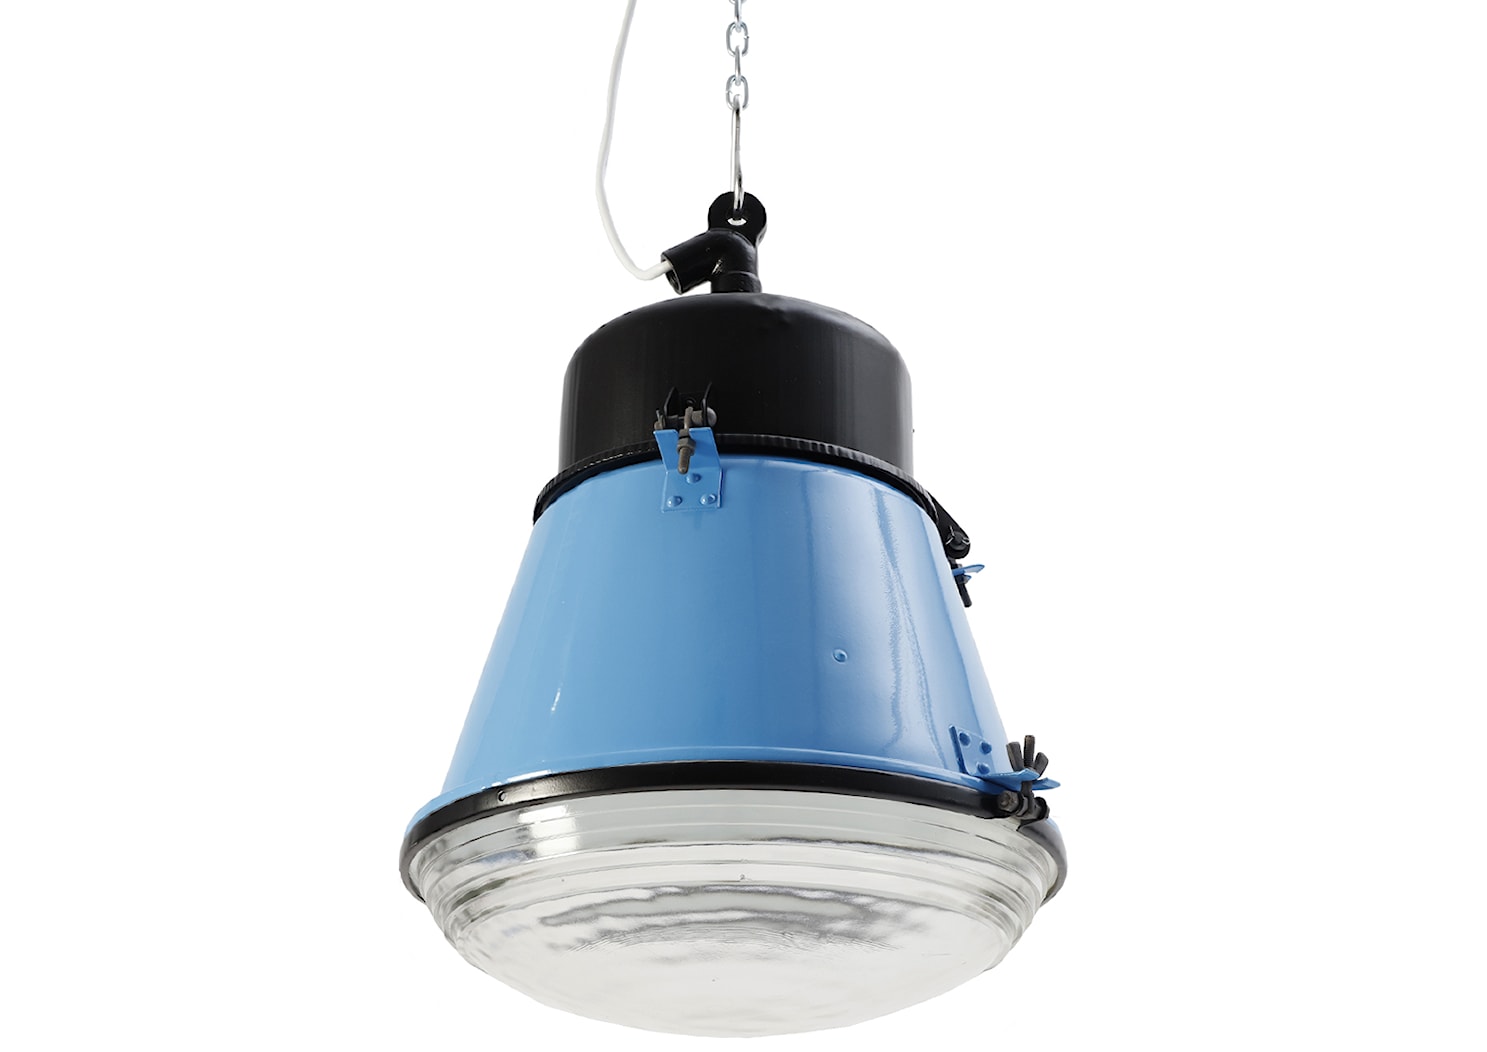 Lampa przemysłowa, ORP-125 PRL, Black/White/Blue. - zdjęcie od Fryderyk Danielczyk STORE - Homebook